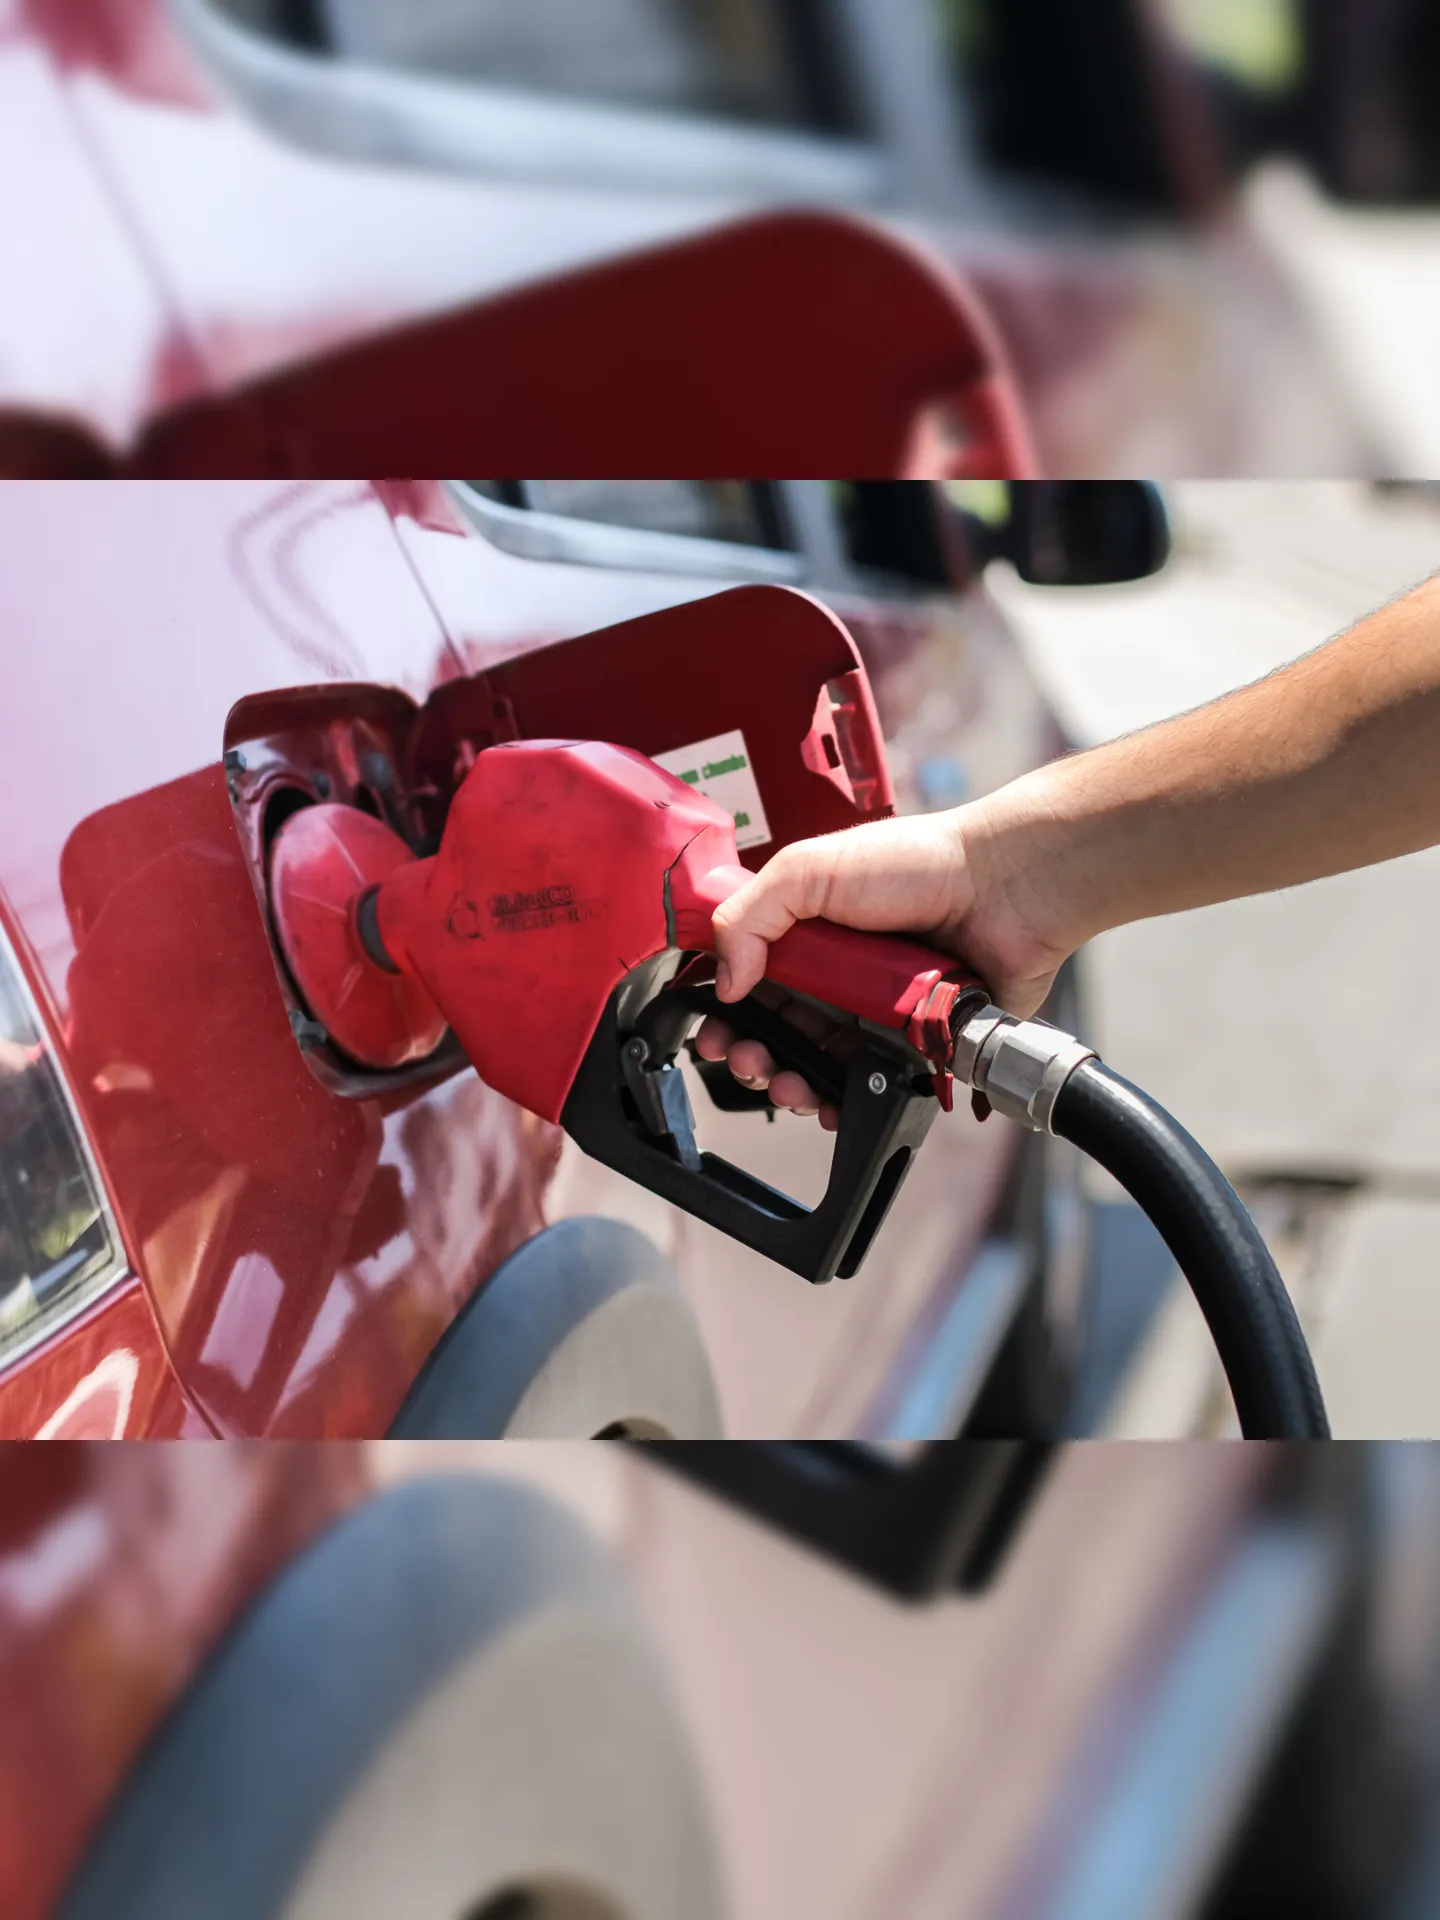 Preço da gasolina aumenta pela segunda semana consecutiva